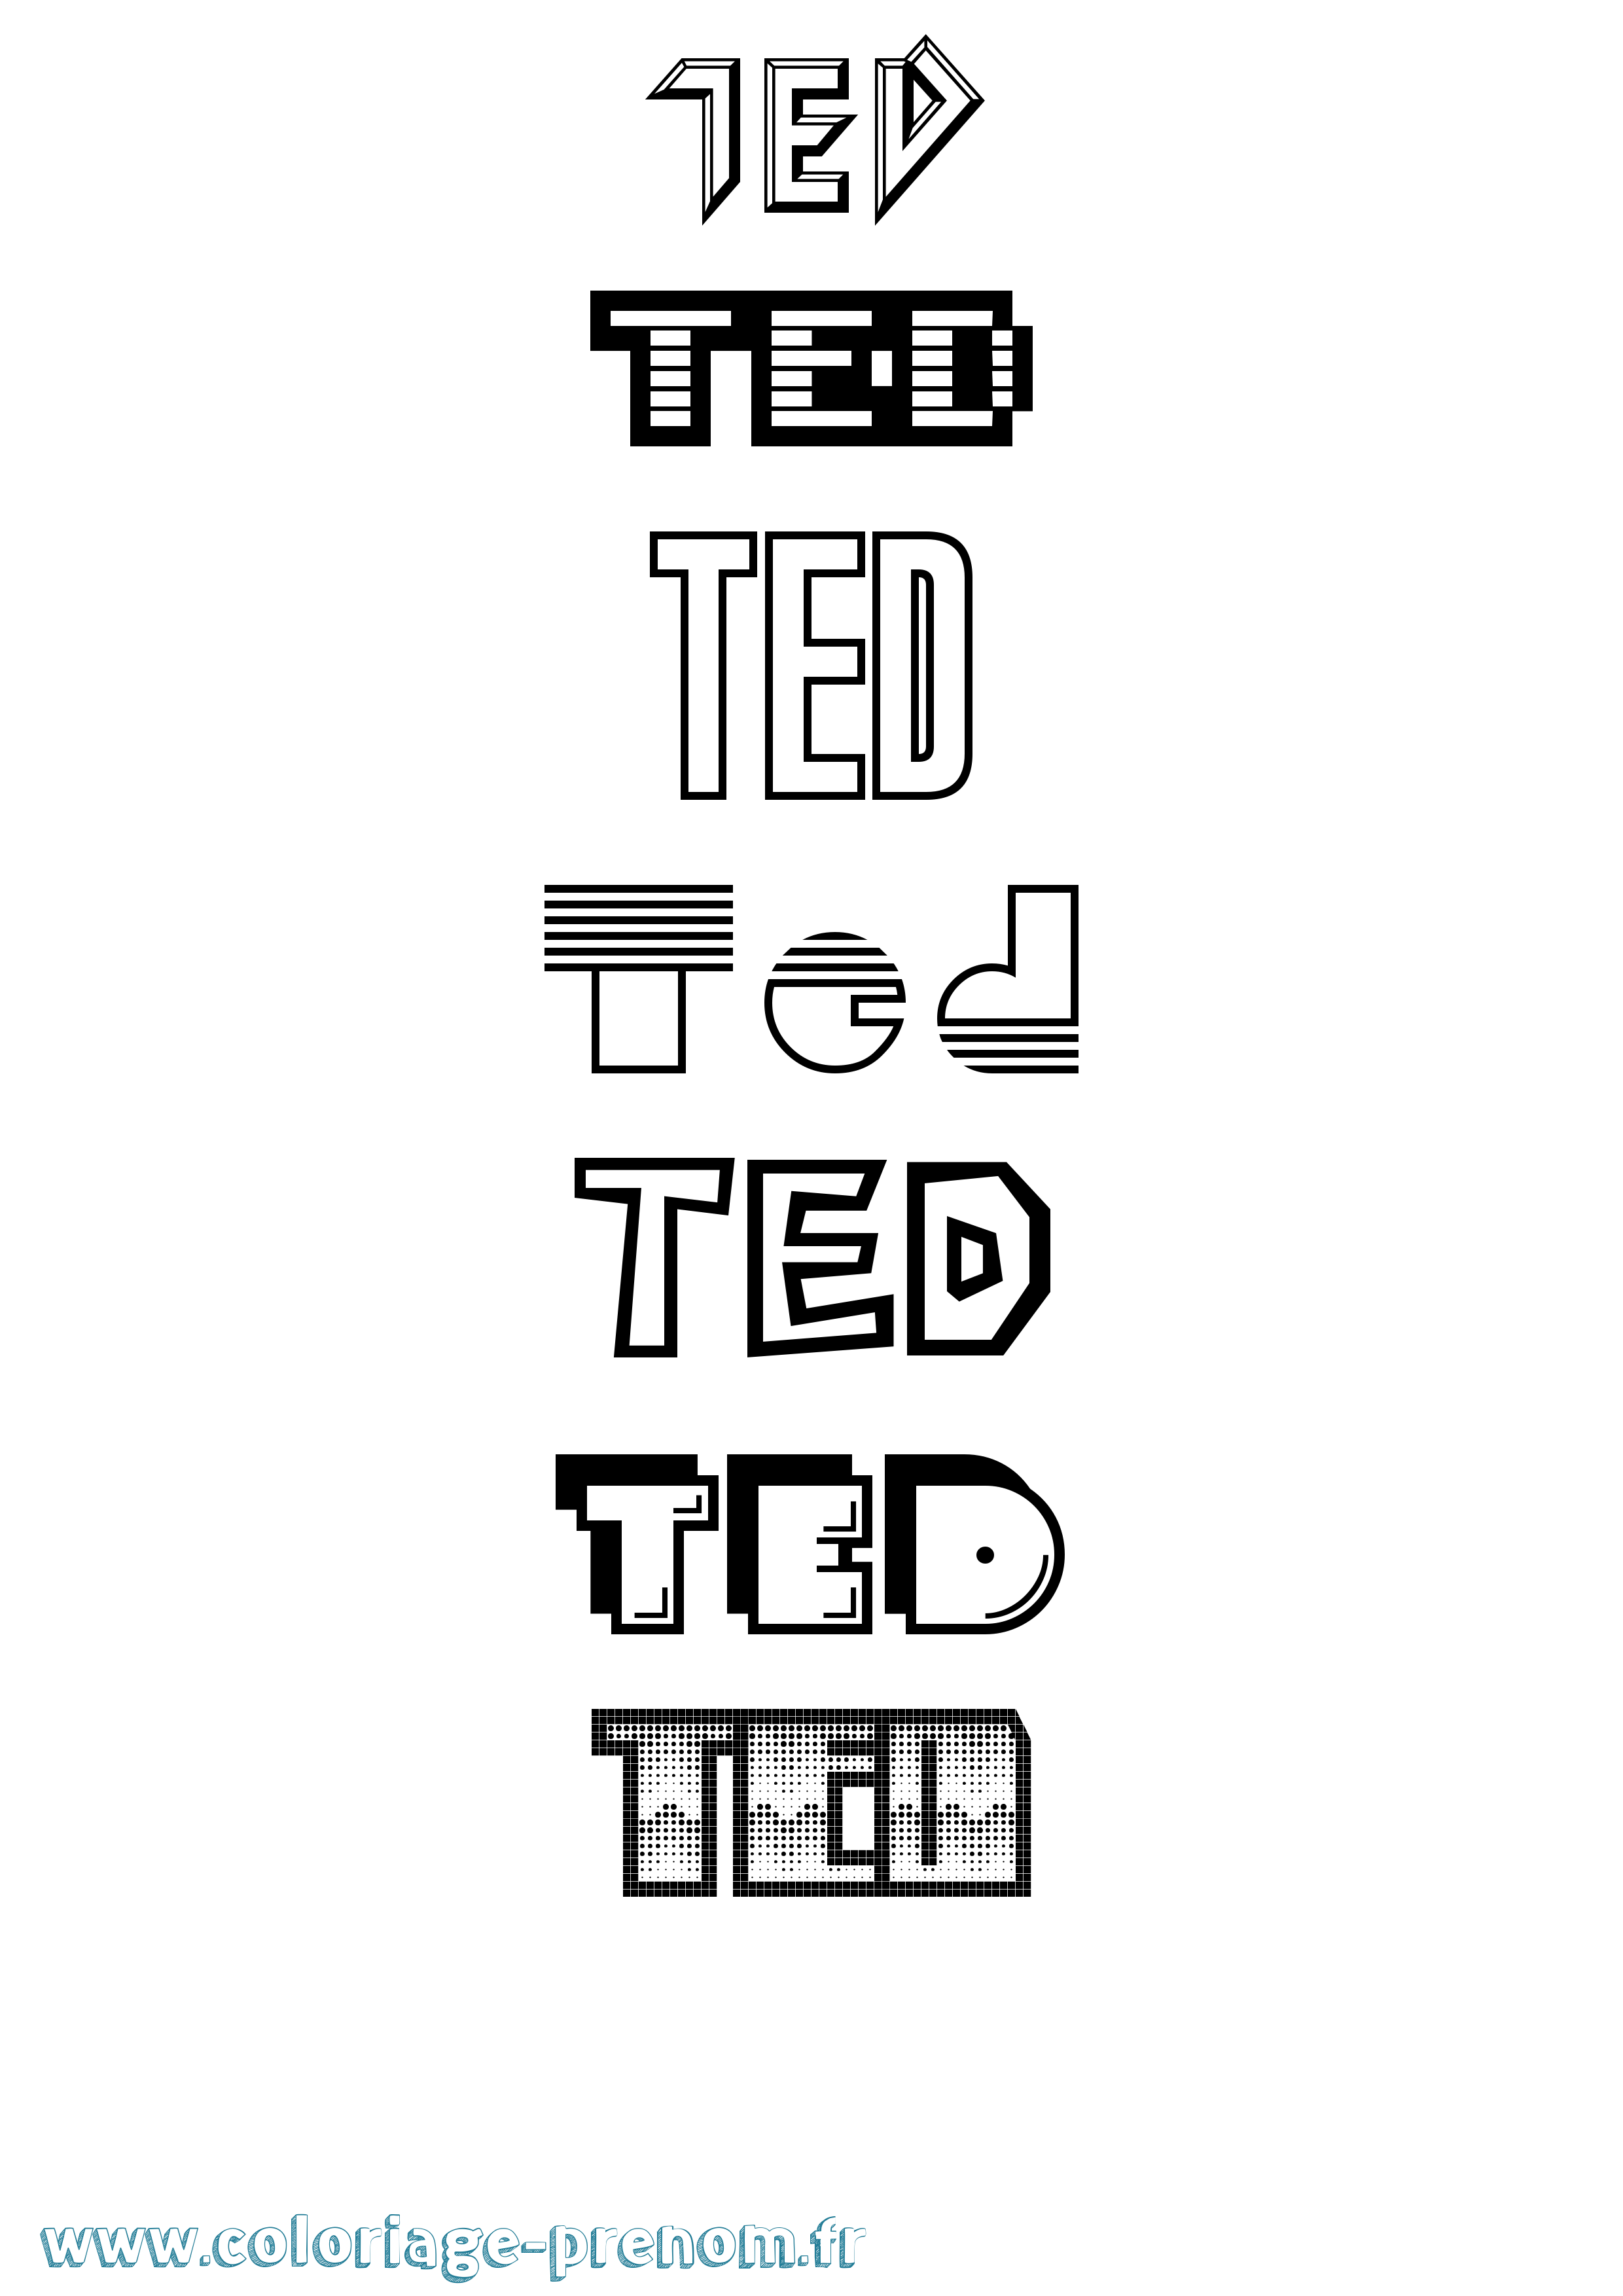 Coloriage prénom Ted Jeux Vidéos